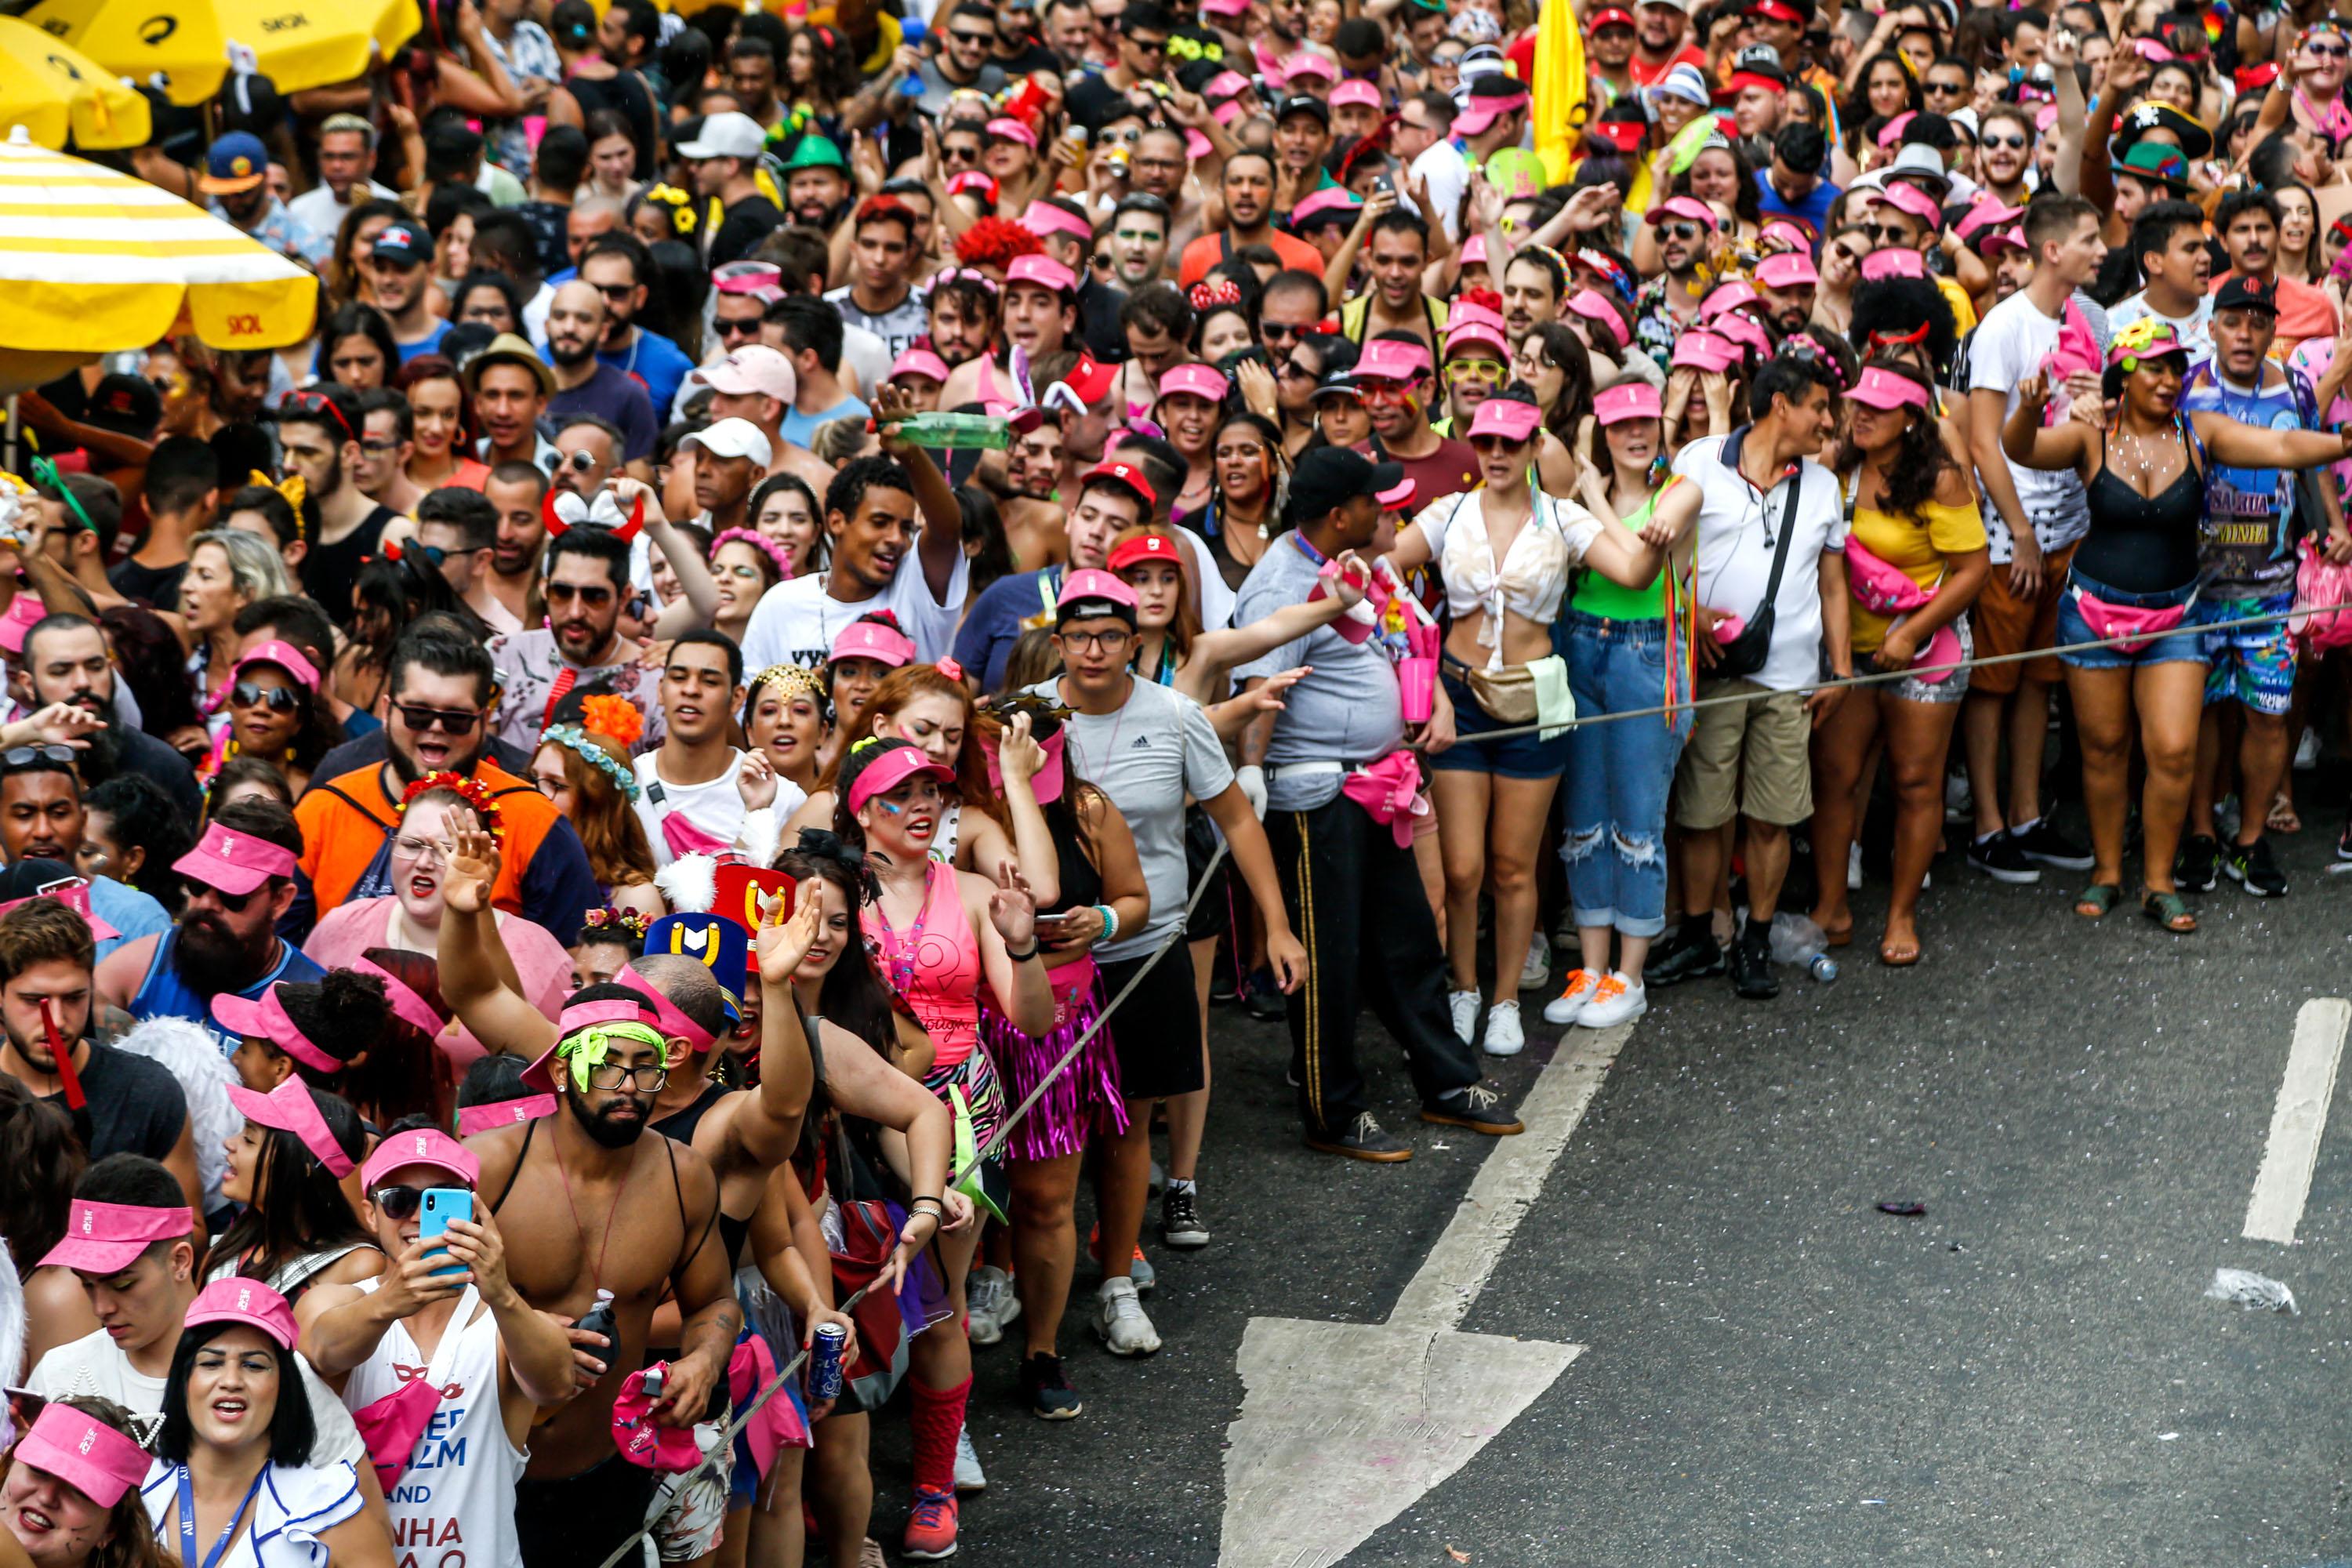 Carnaval de rua de SP encolheu? Por que tantos blocos desistiram